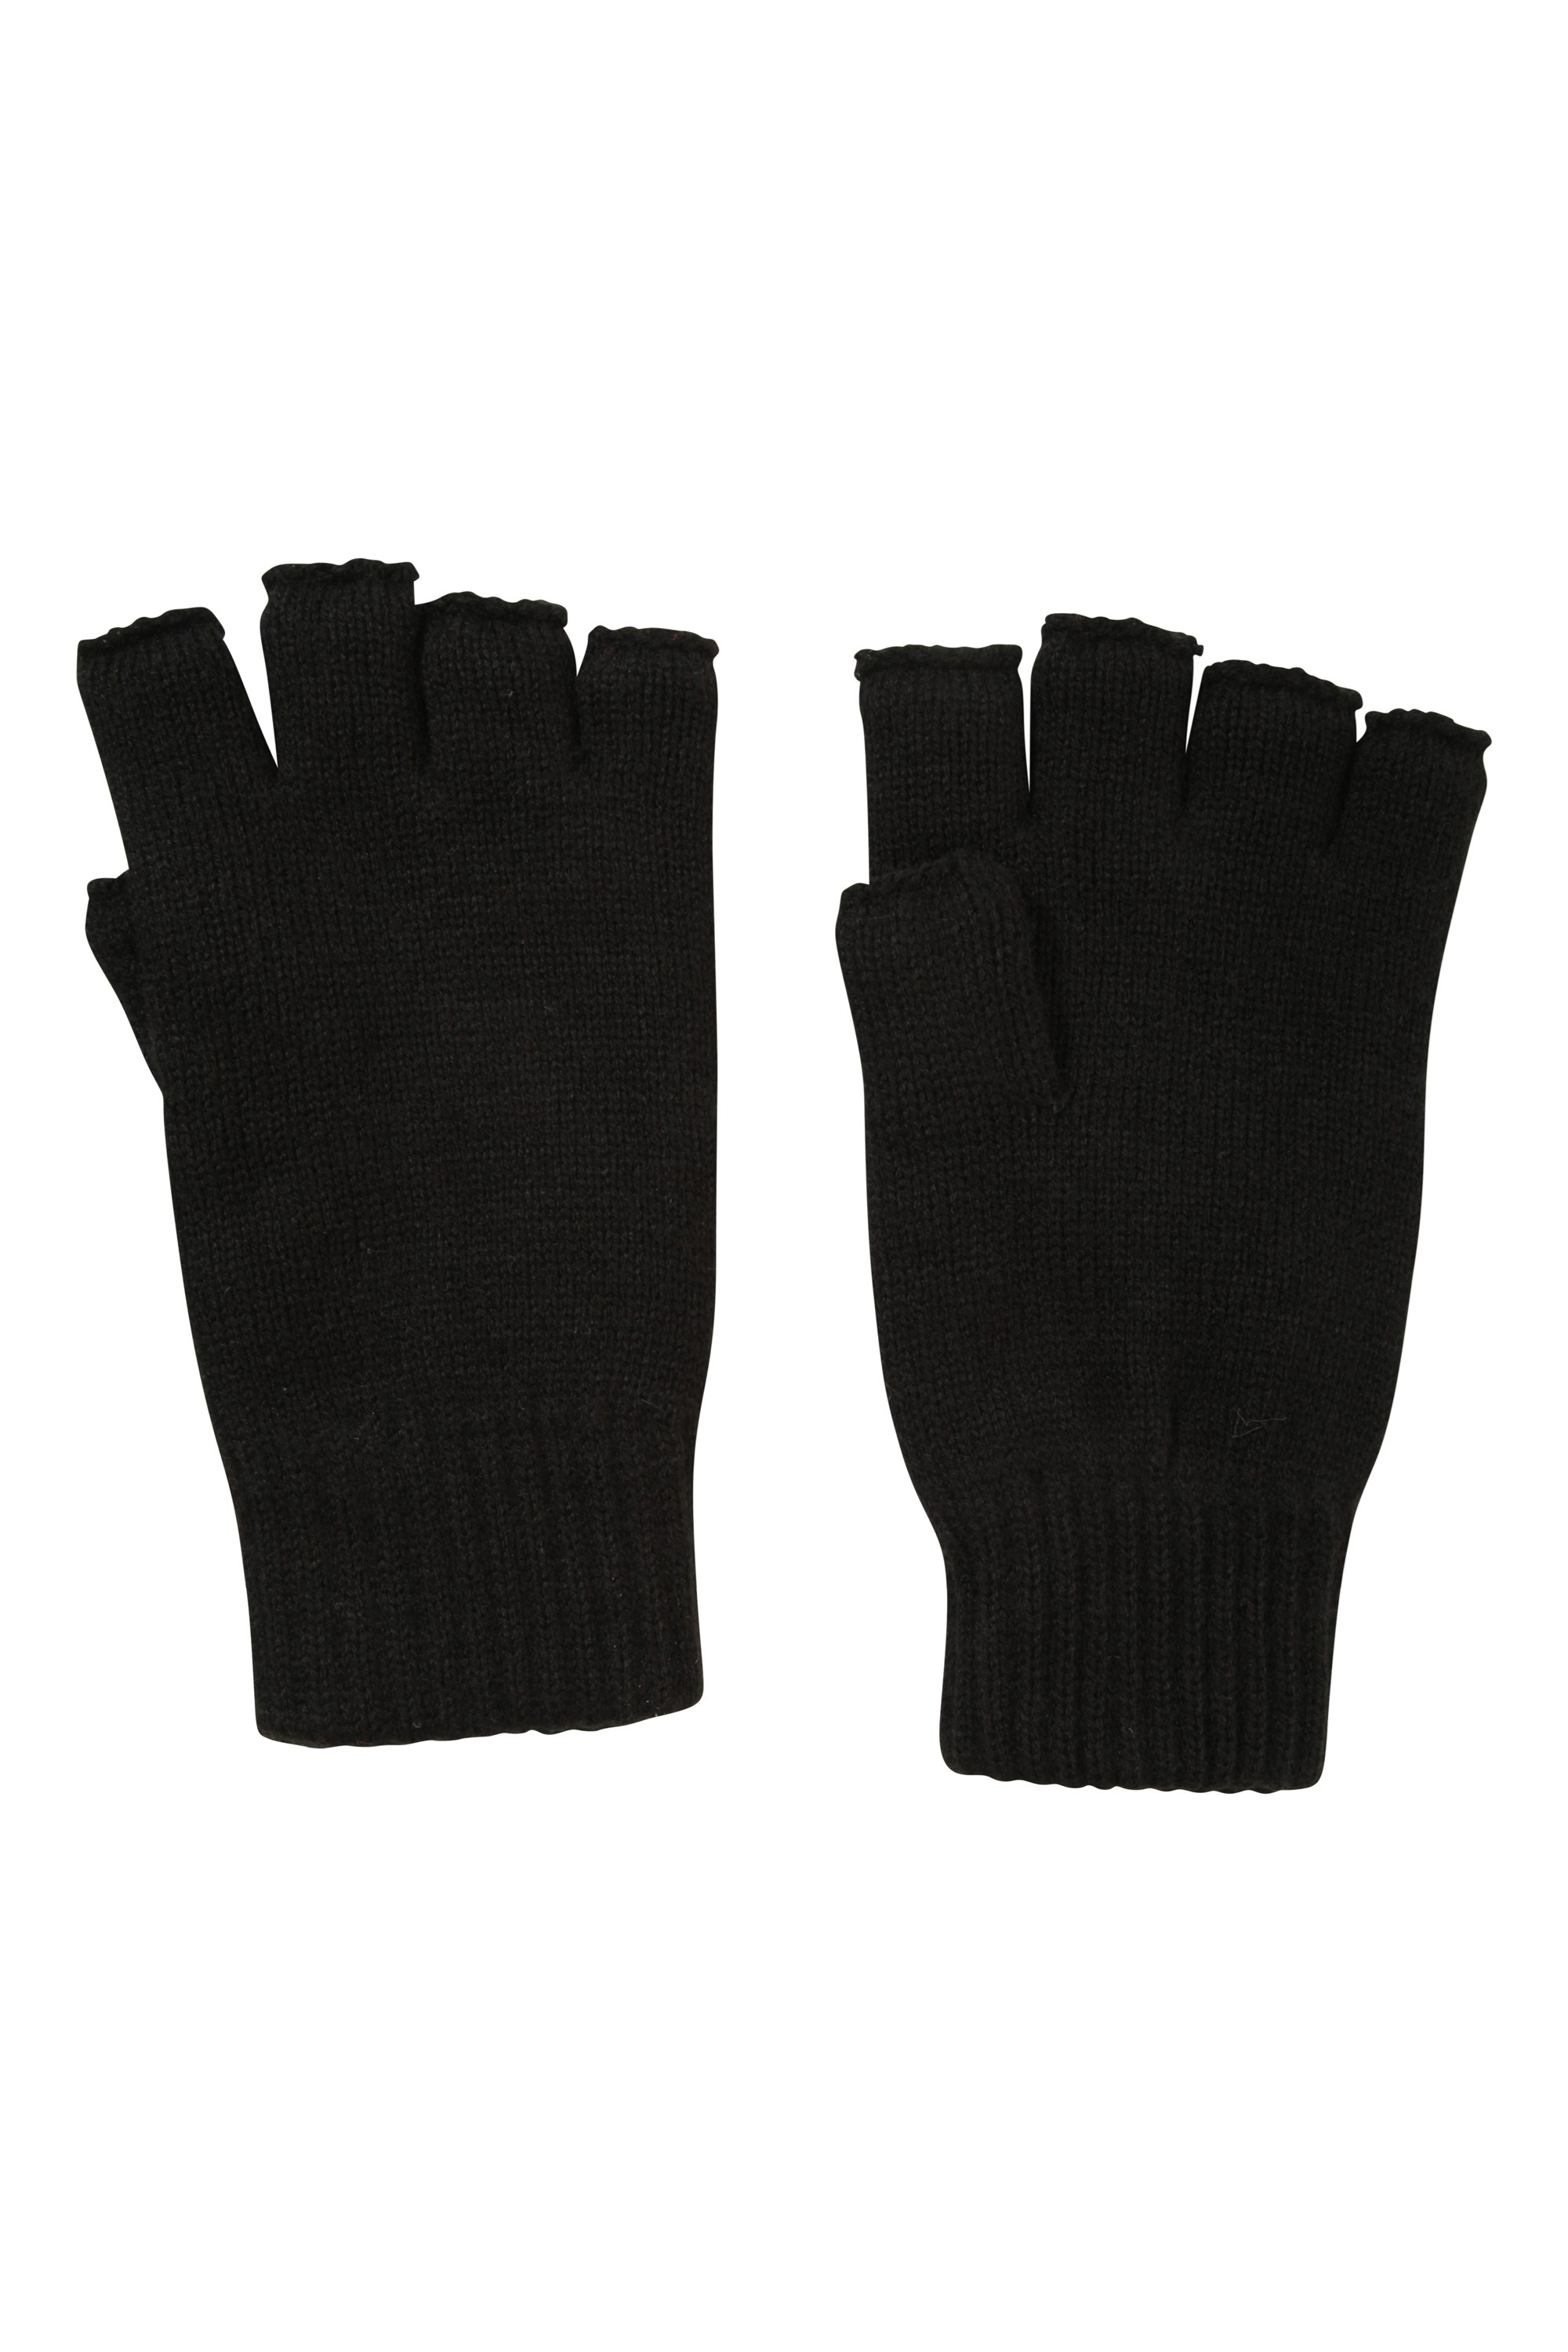 Fingerless Knitted Gloves - Black